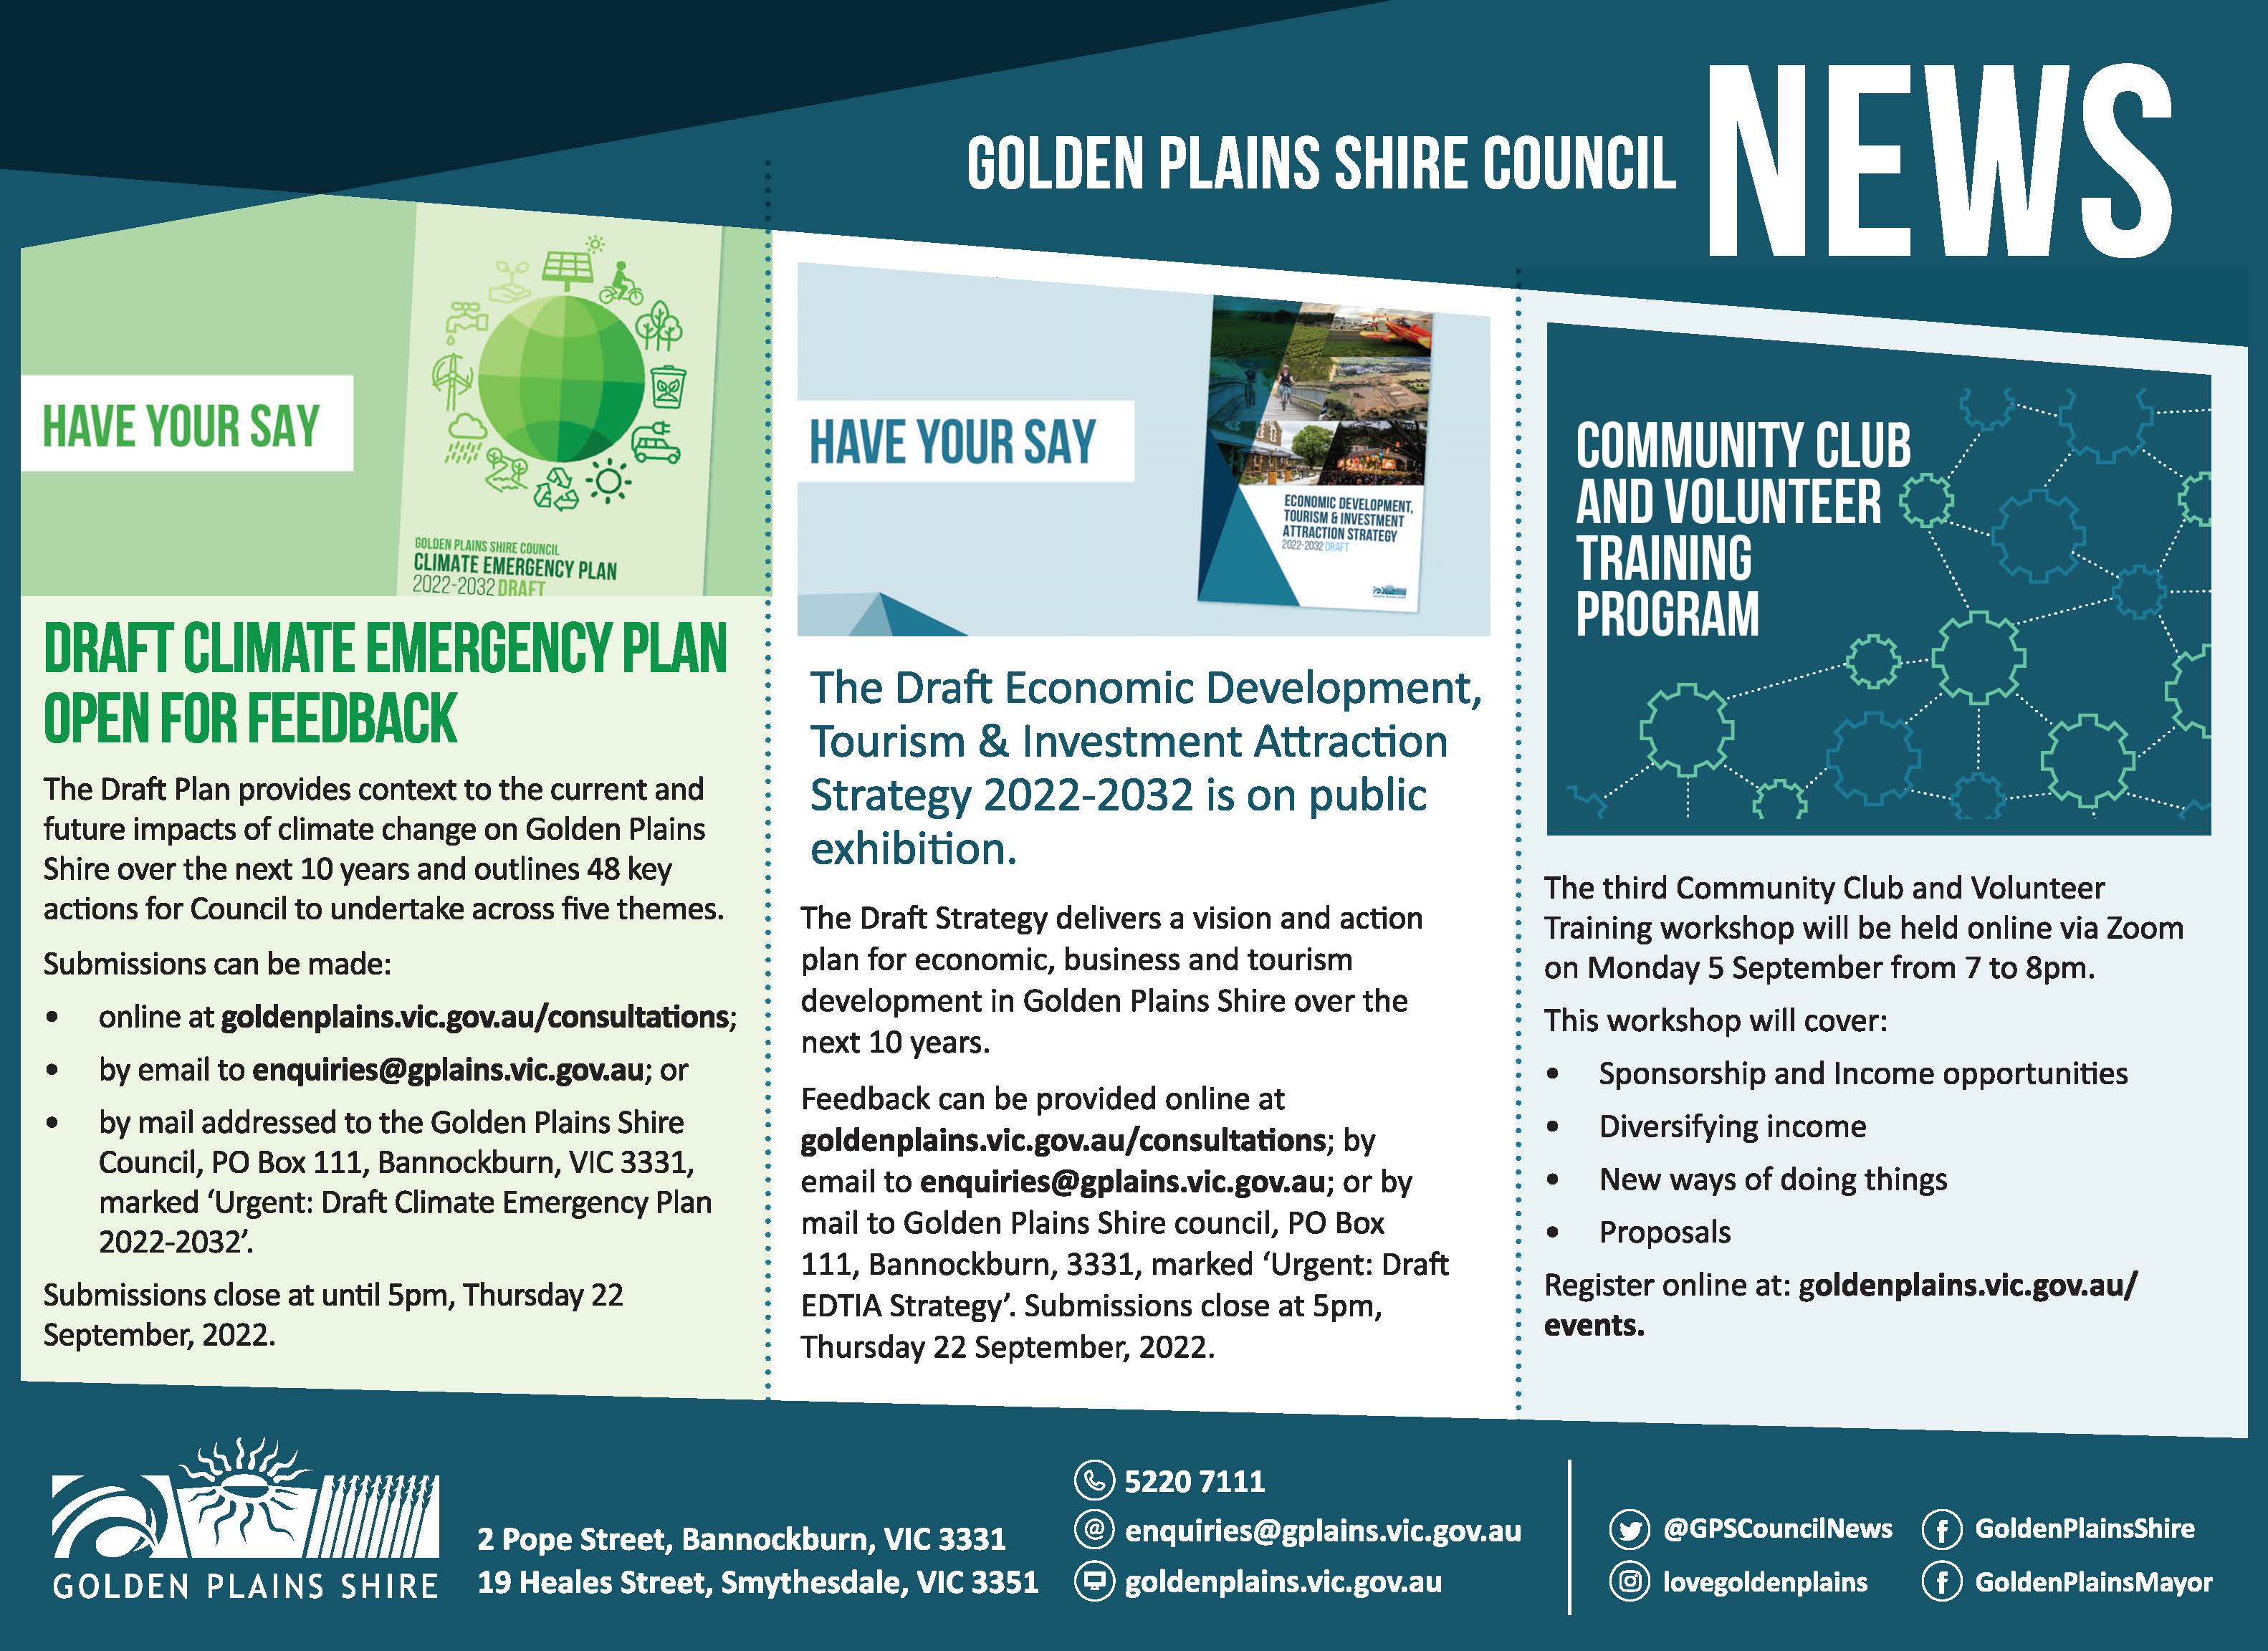 Council News: Golden Plains Times - 1 September 2022